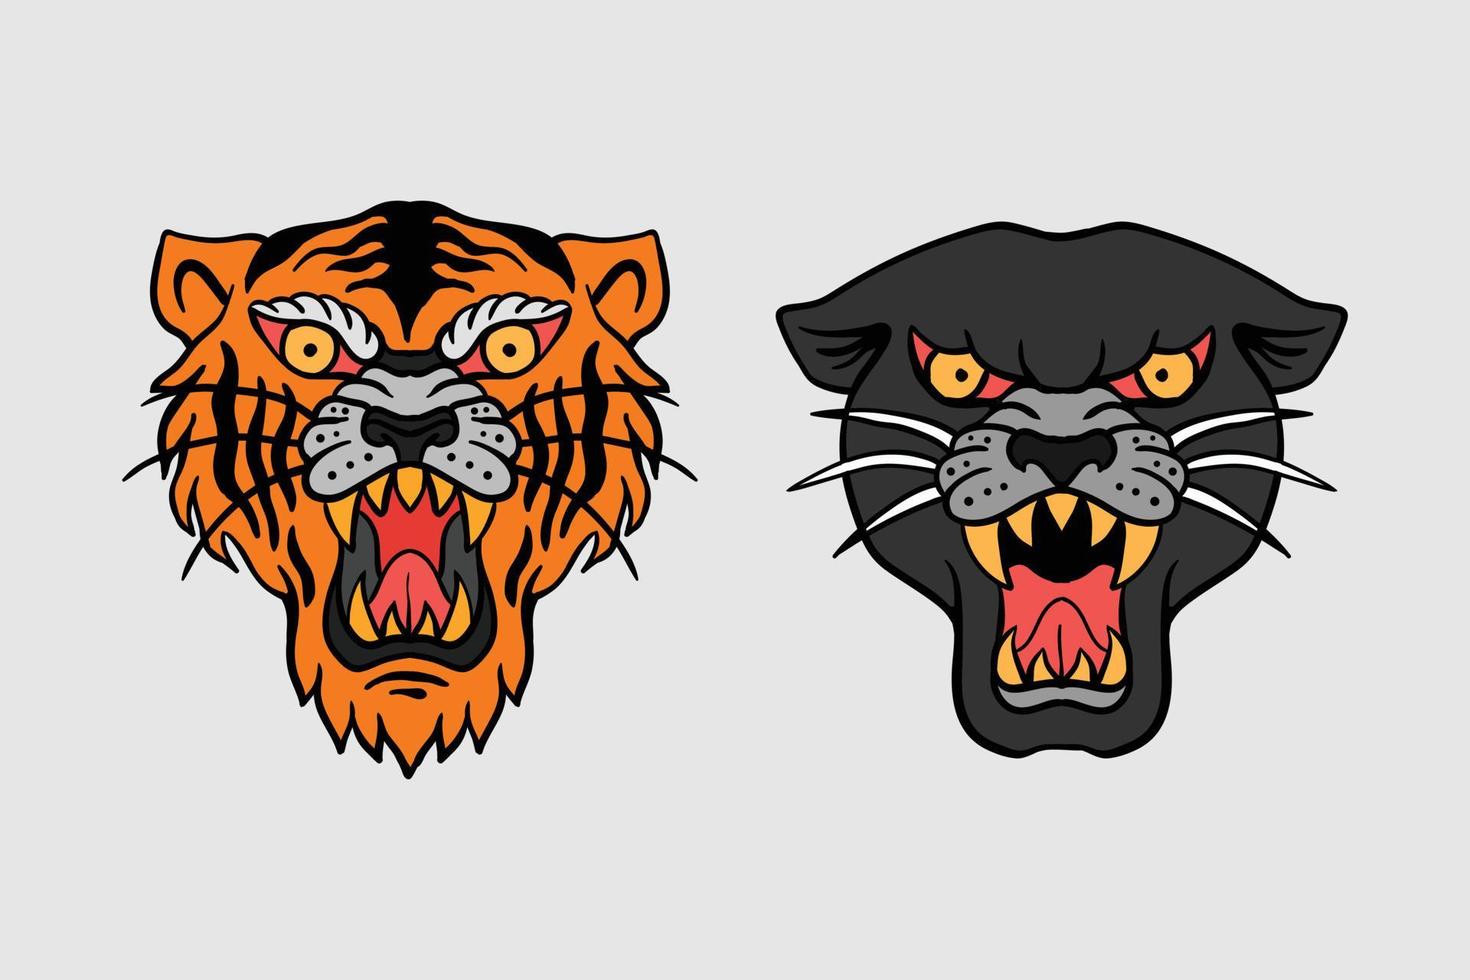 tijger en zwarte panter afbeelding afdrukken op t-shirts, jas, souvenirs of tatoeage gratis vector